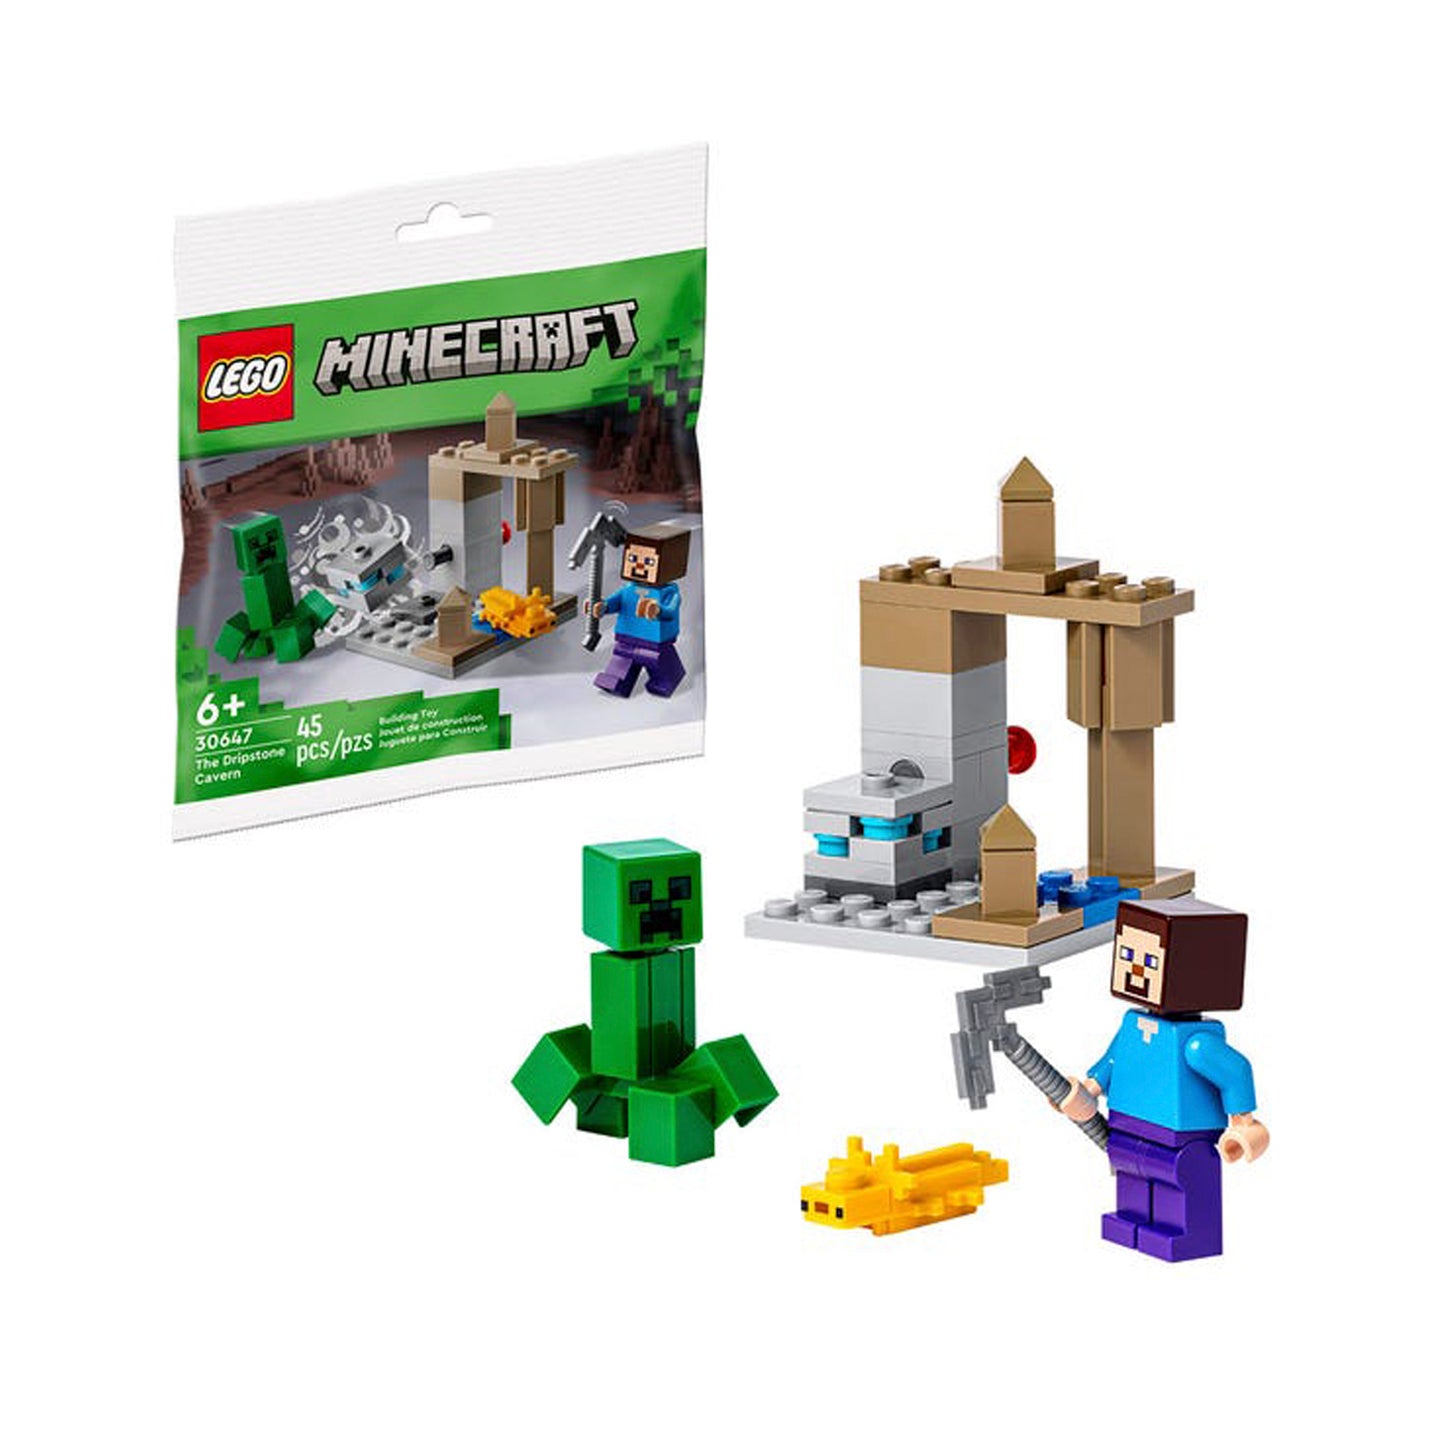 Lego Minecraft La Cueva Karstica 30647 - Crazygames